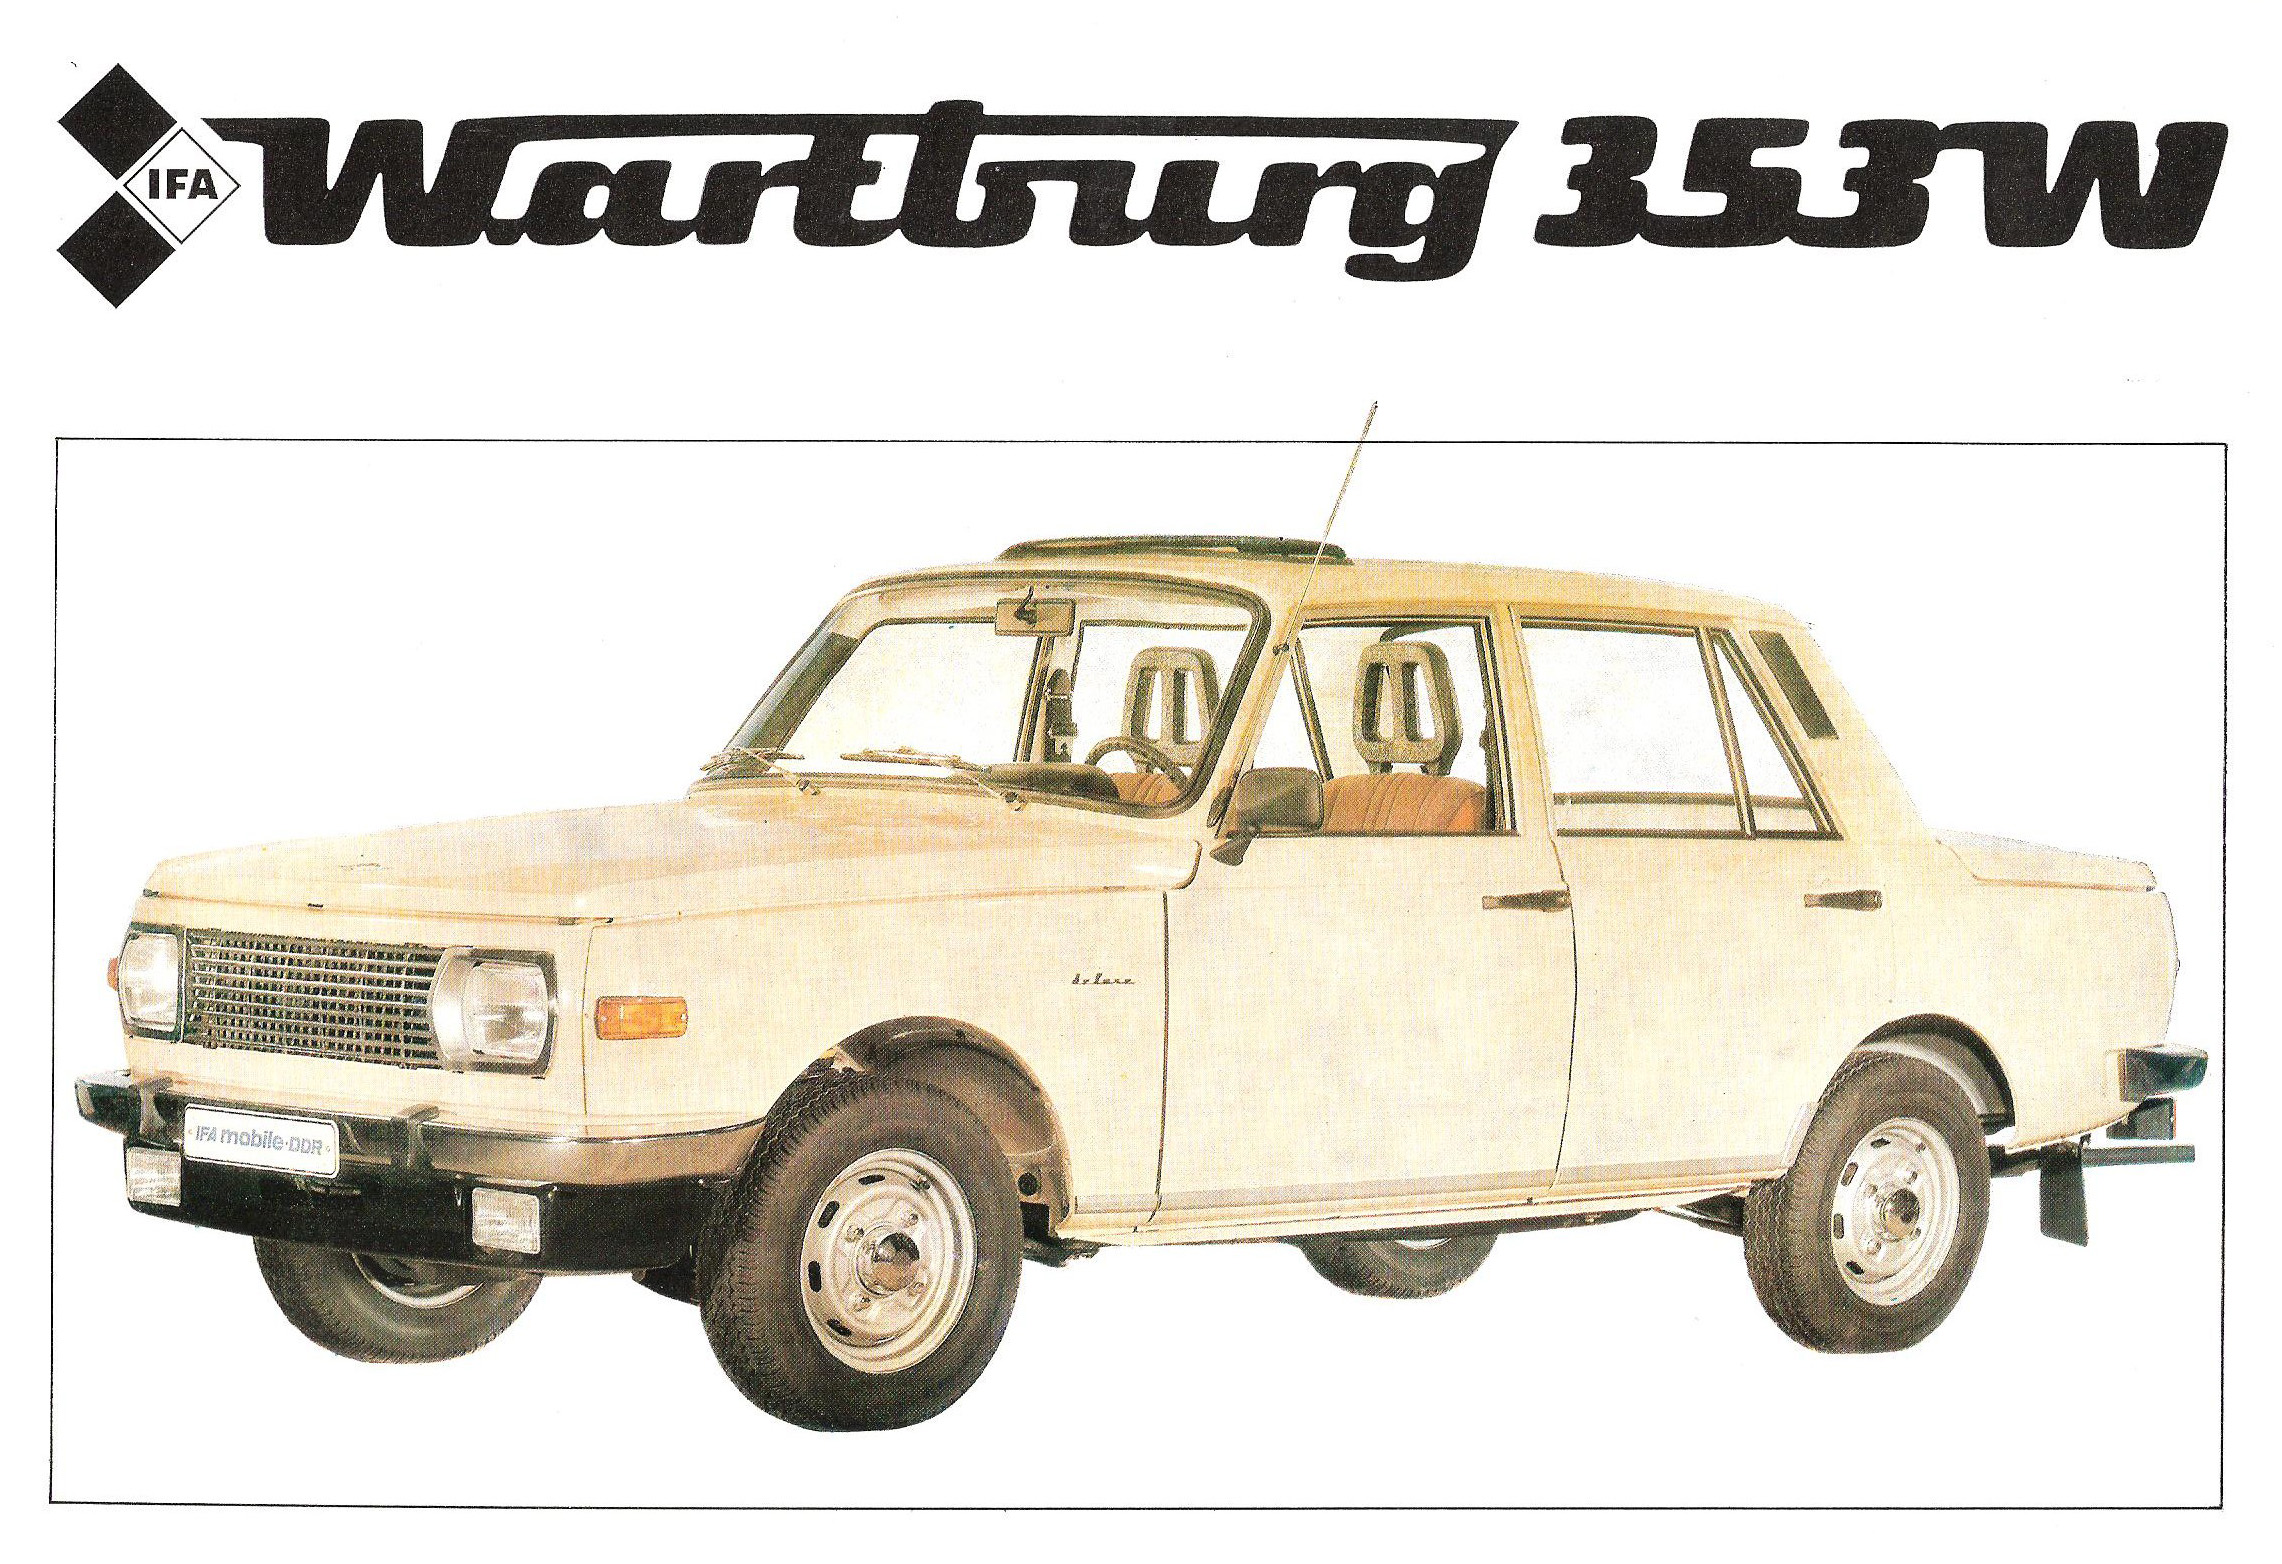 Wartburg 353w